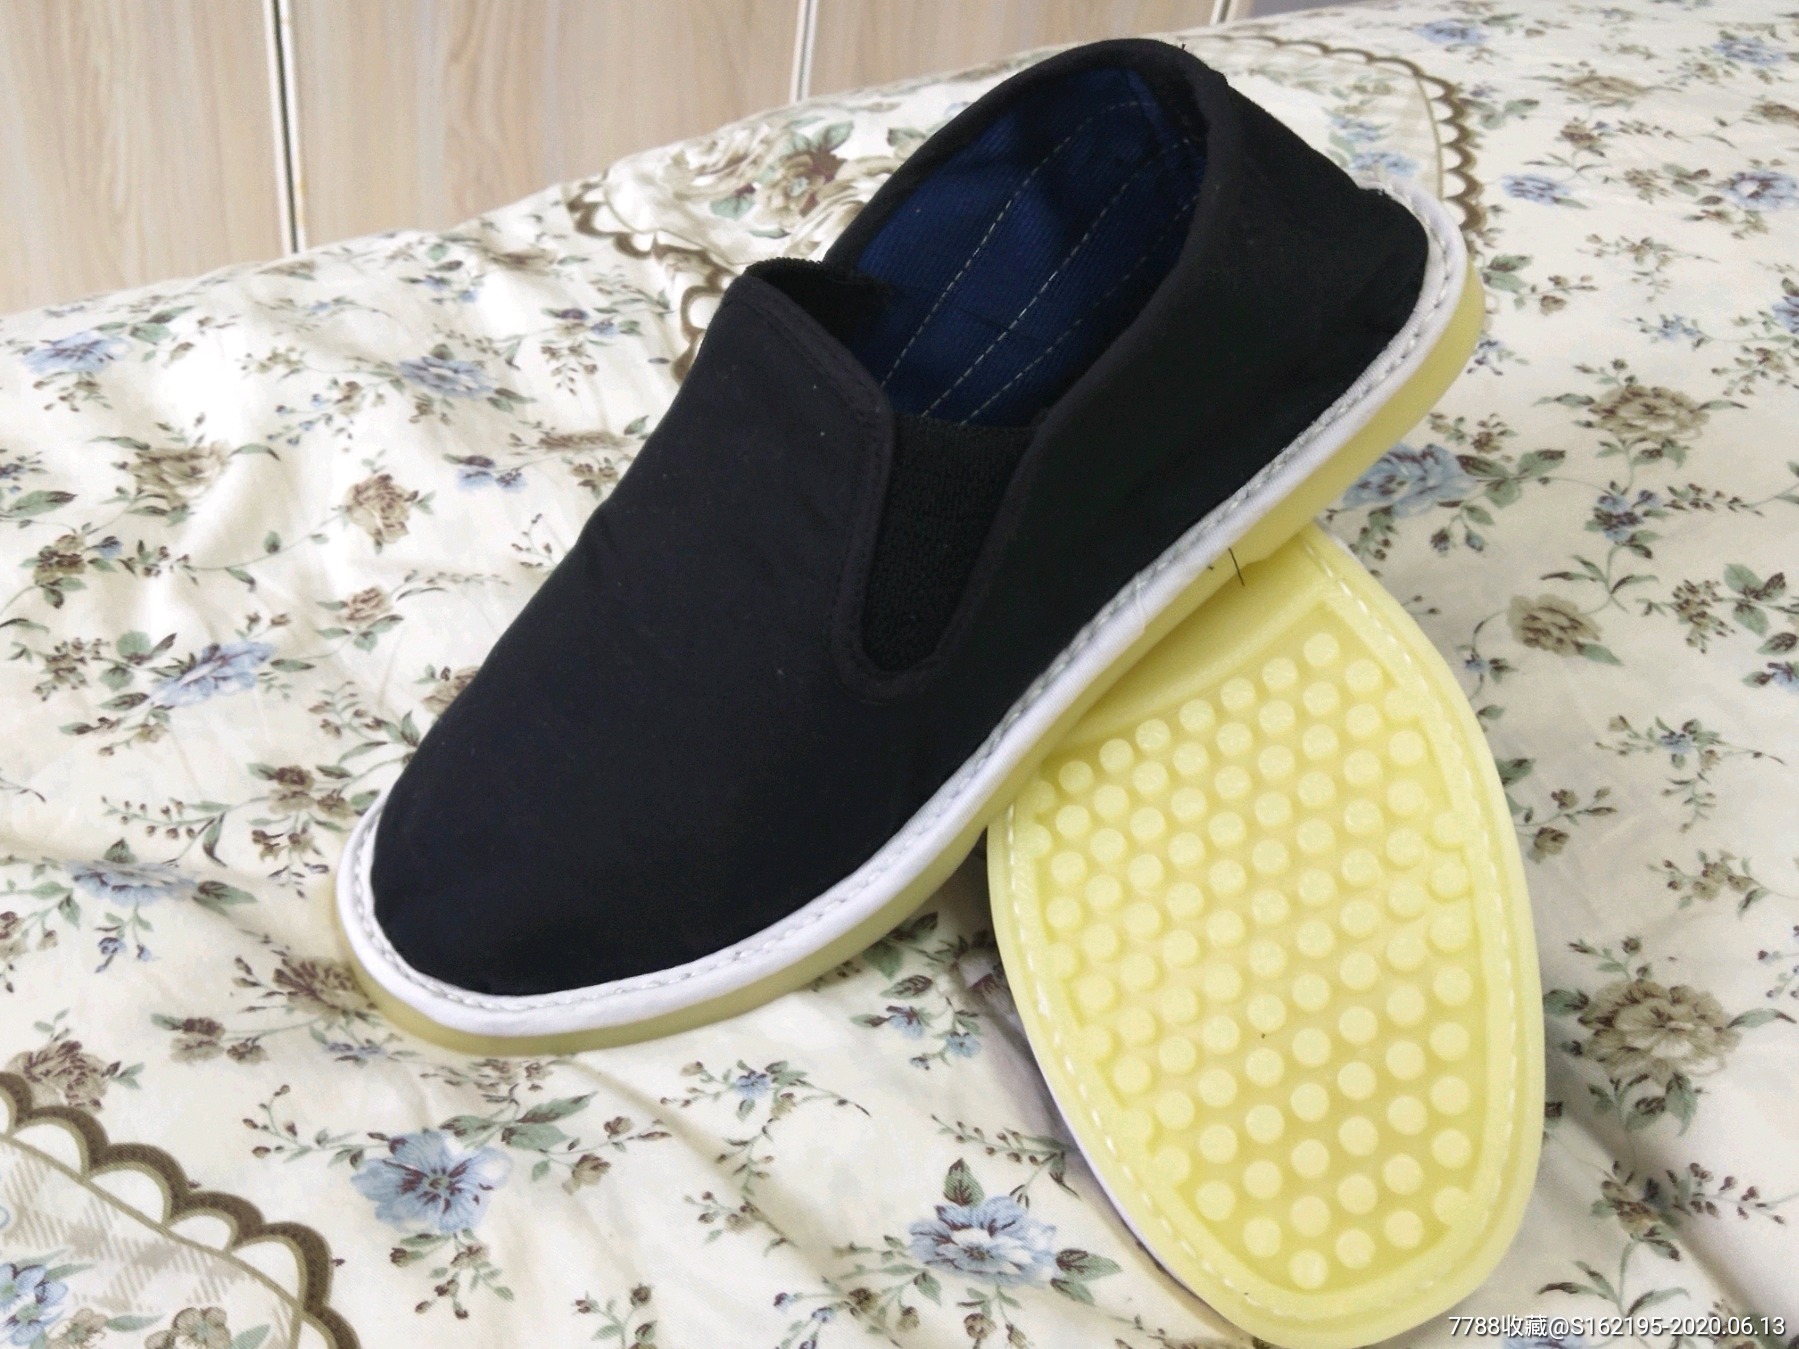 手工布鞋塑料底布鞋自己做的布鞋